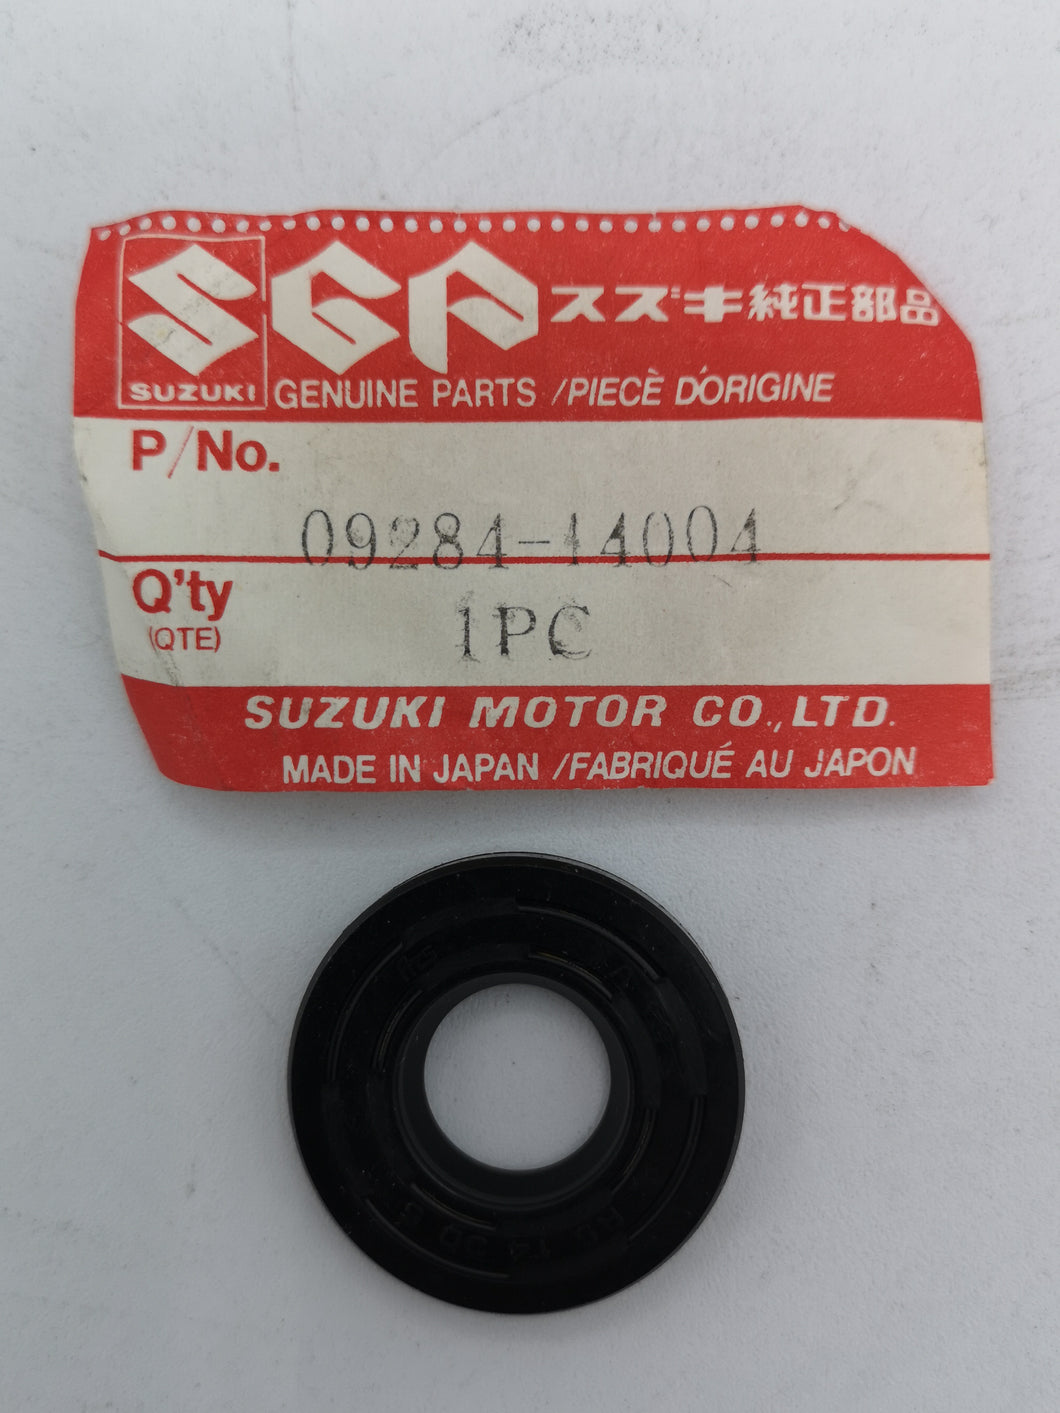 Suzuki Seal, Clutch Rod Conn Dust 09284-14004